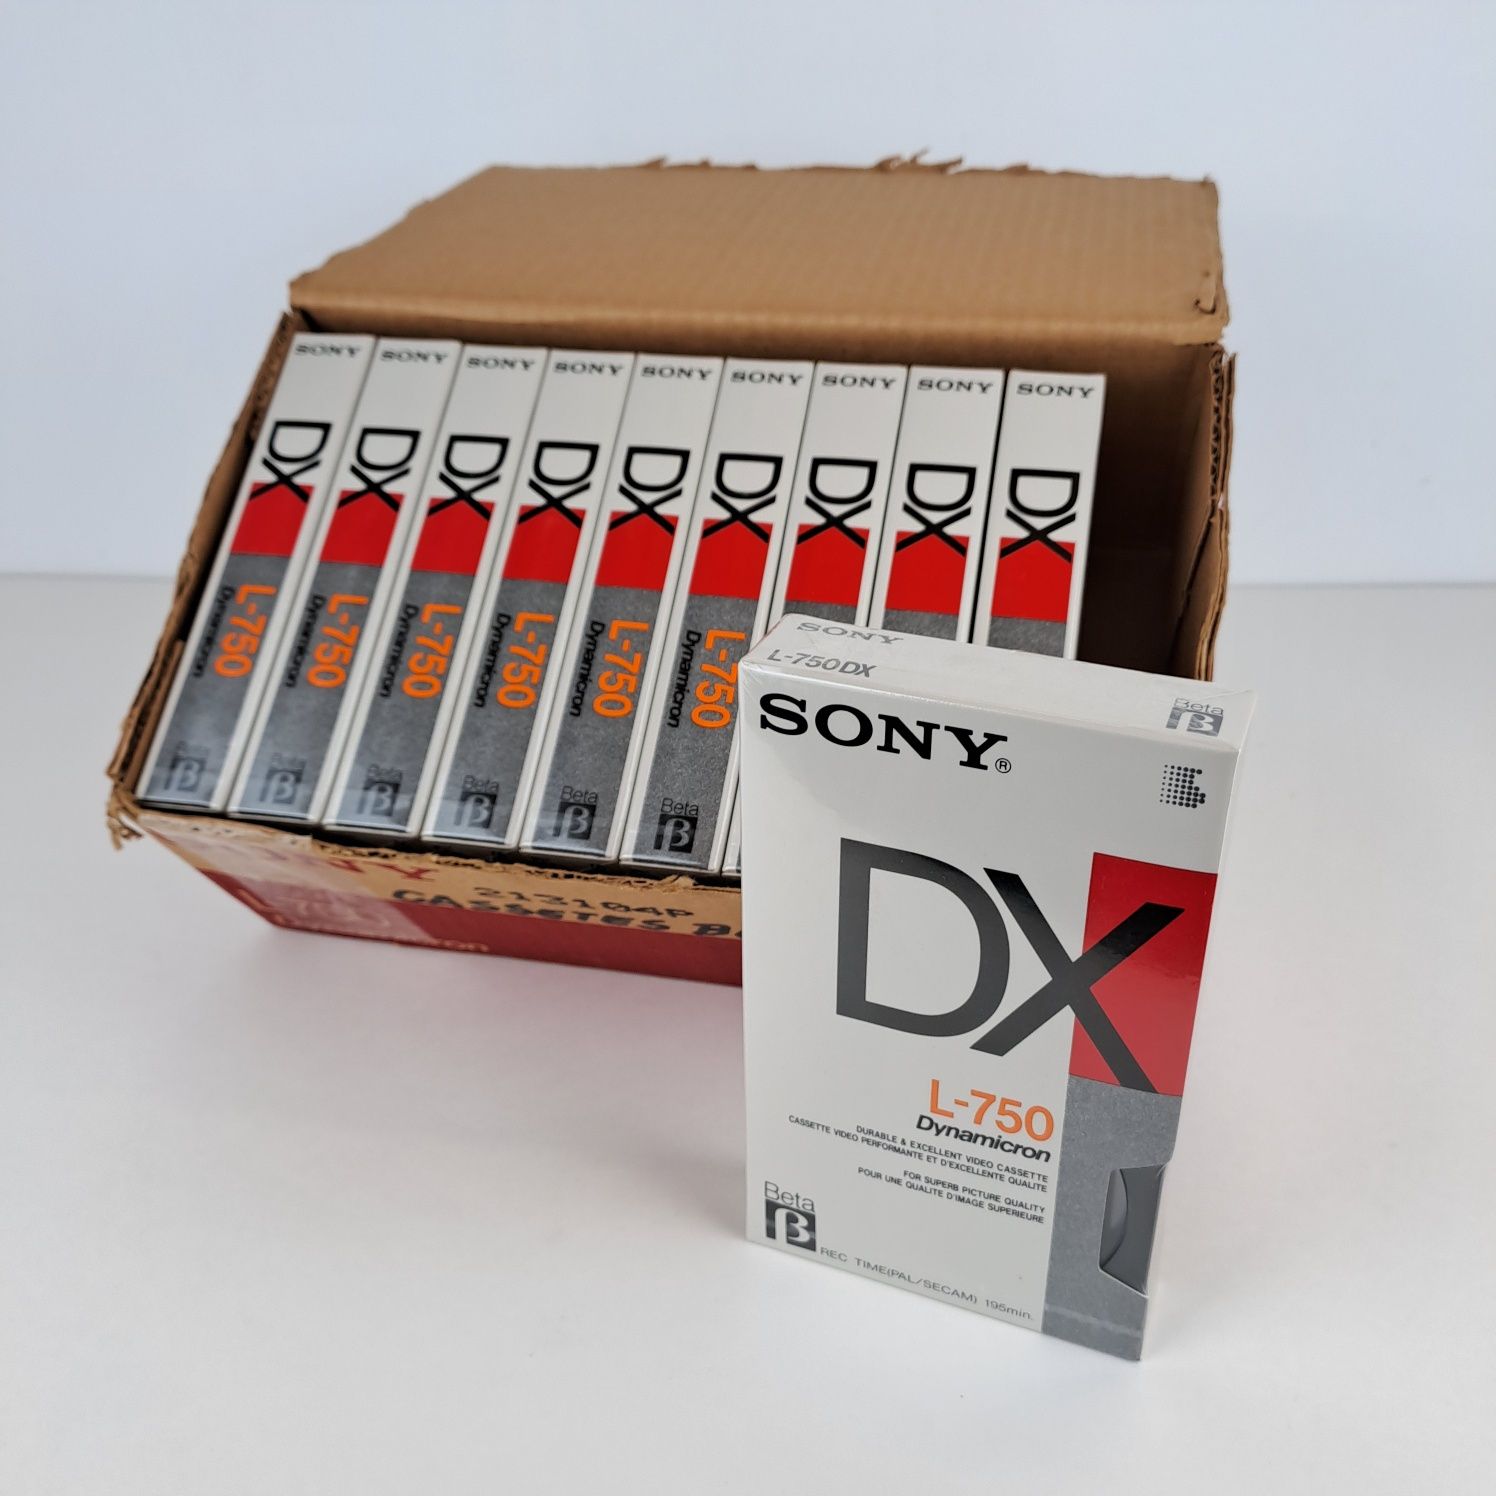 Caixa de cassetes Betamax L-750DX